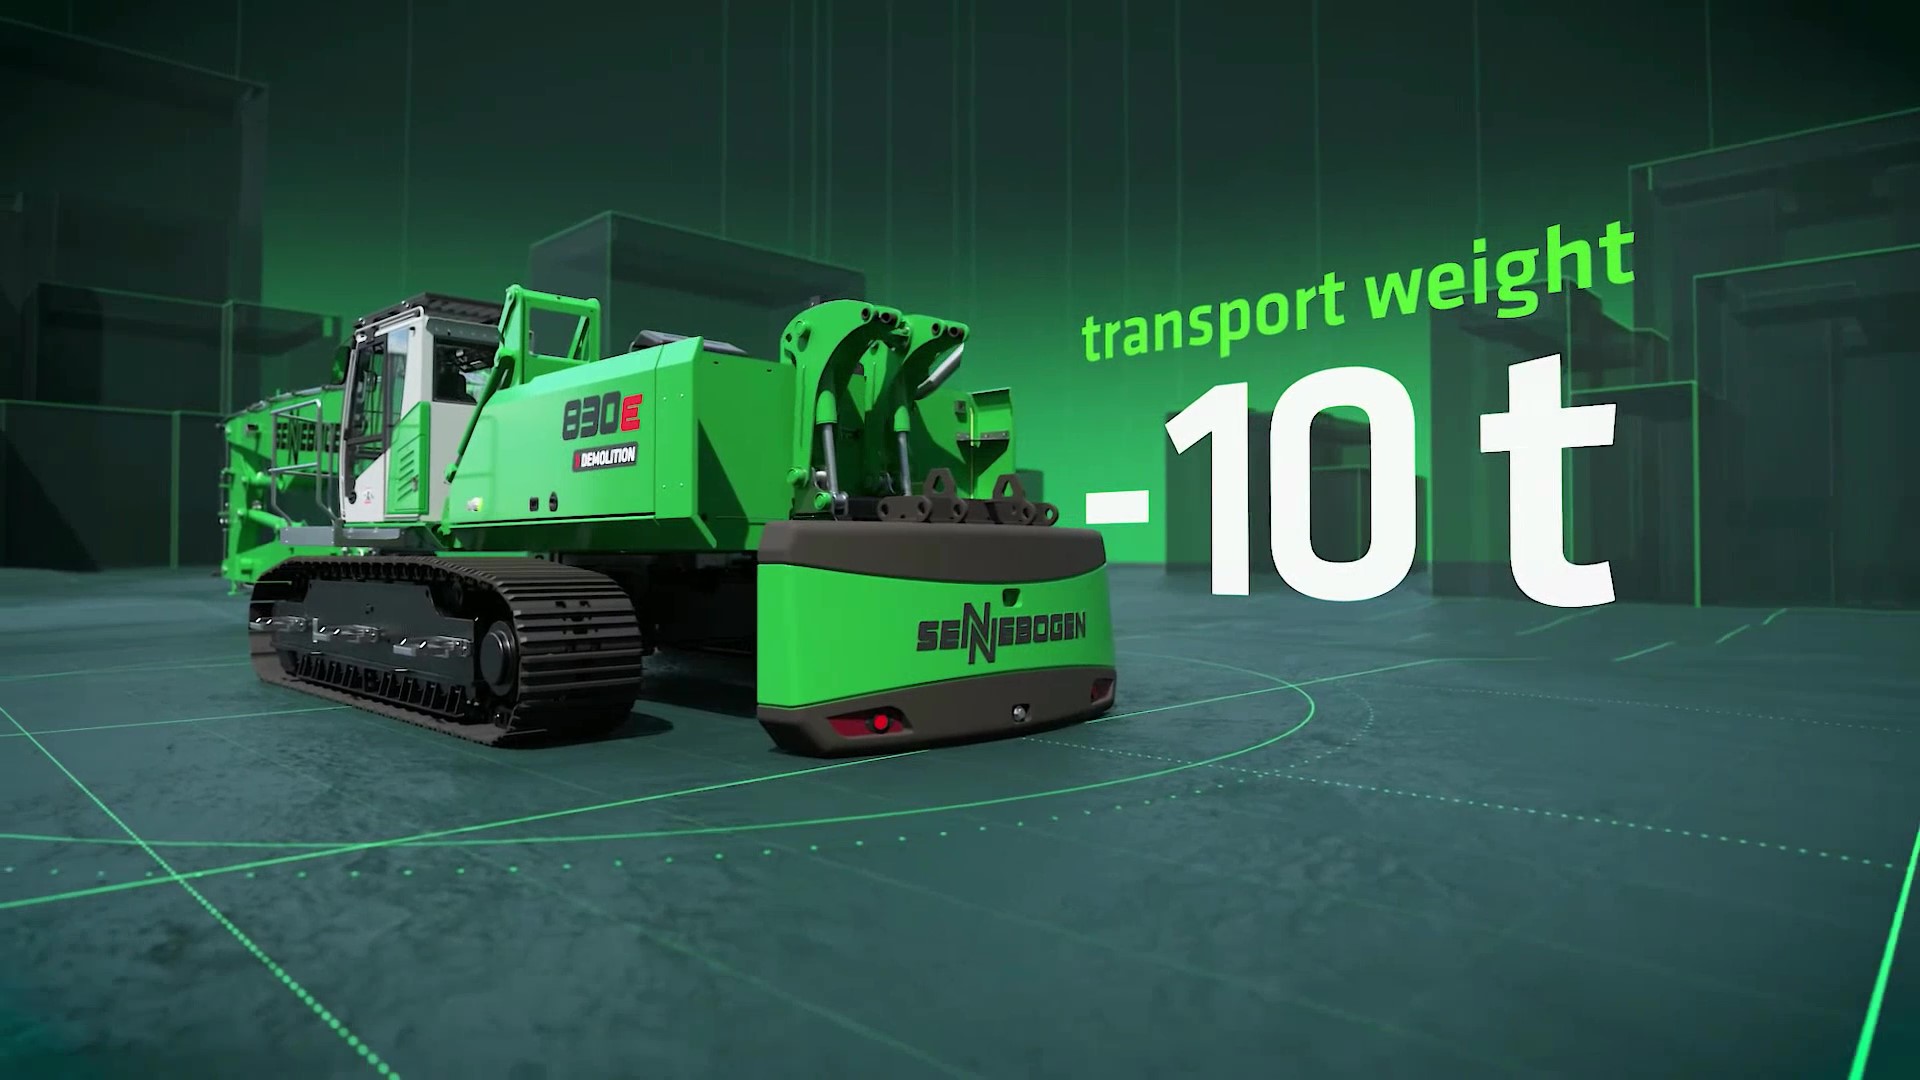 Il contrappeso idraulico riduce il peso di trasporto del modello 830E di 10 tonnellate